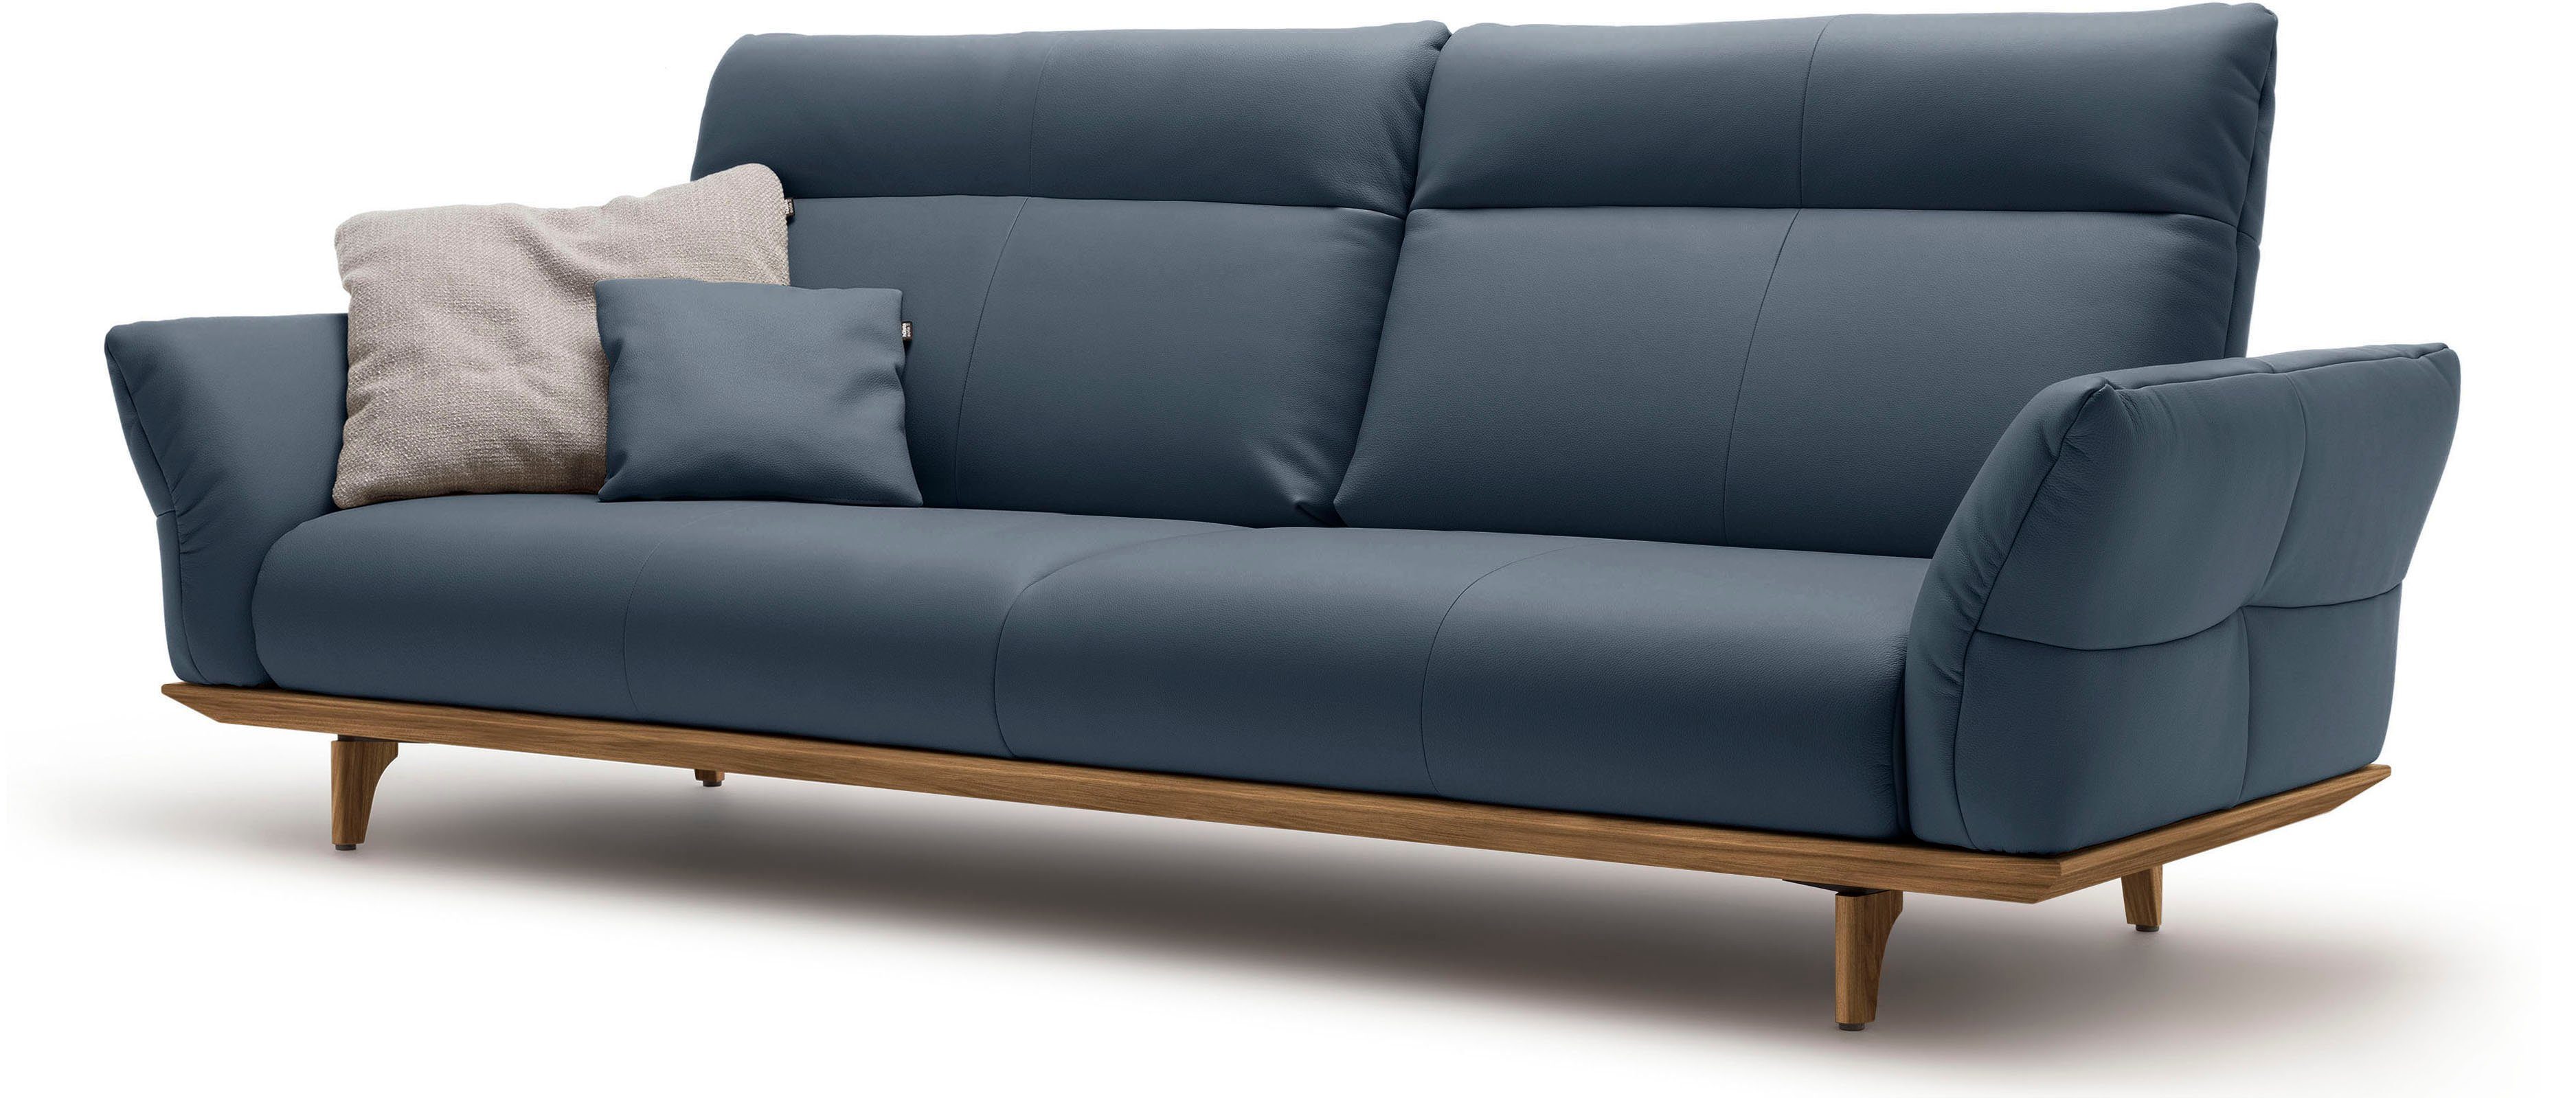 hülsta sofa 4-Sitzer hs.460, 248 cm Sockel Nussbaum, in Nussbaum, Breite Füße